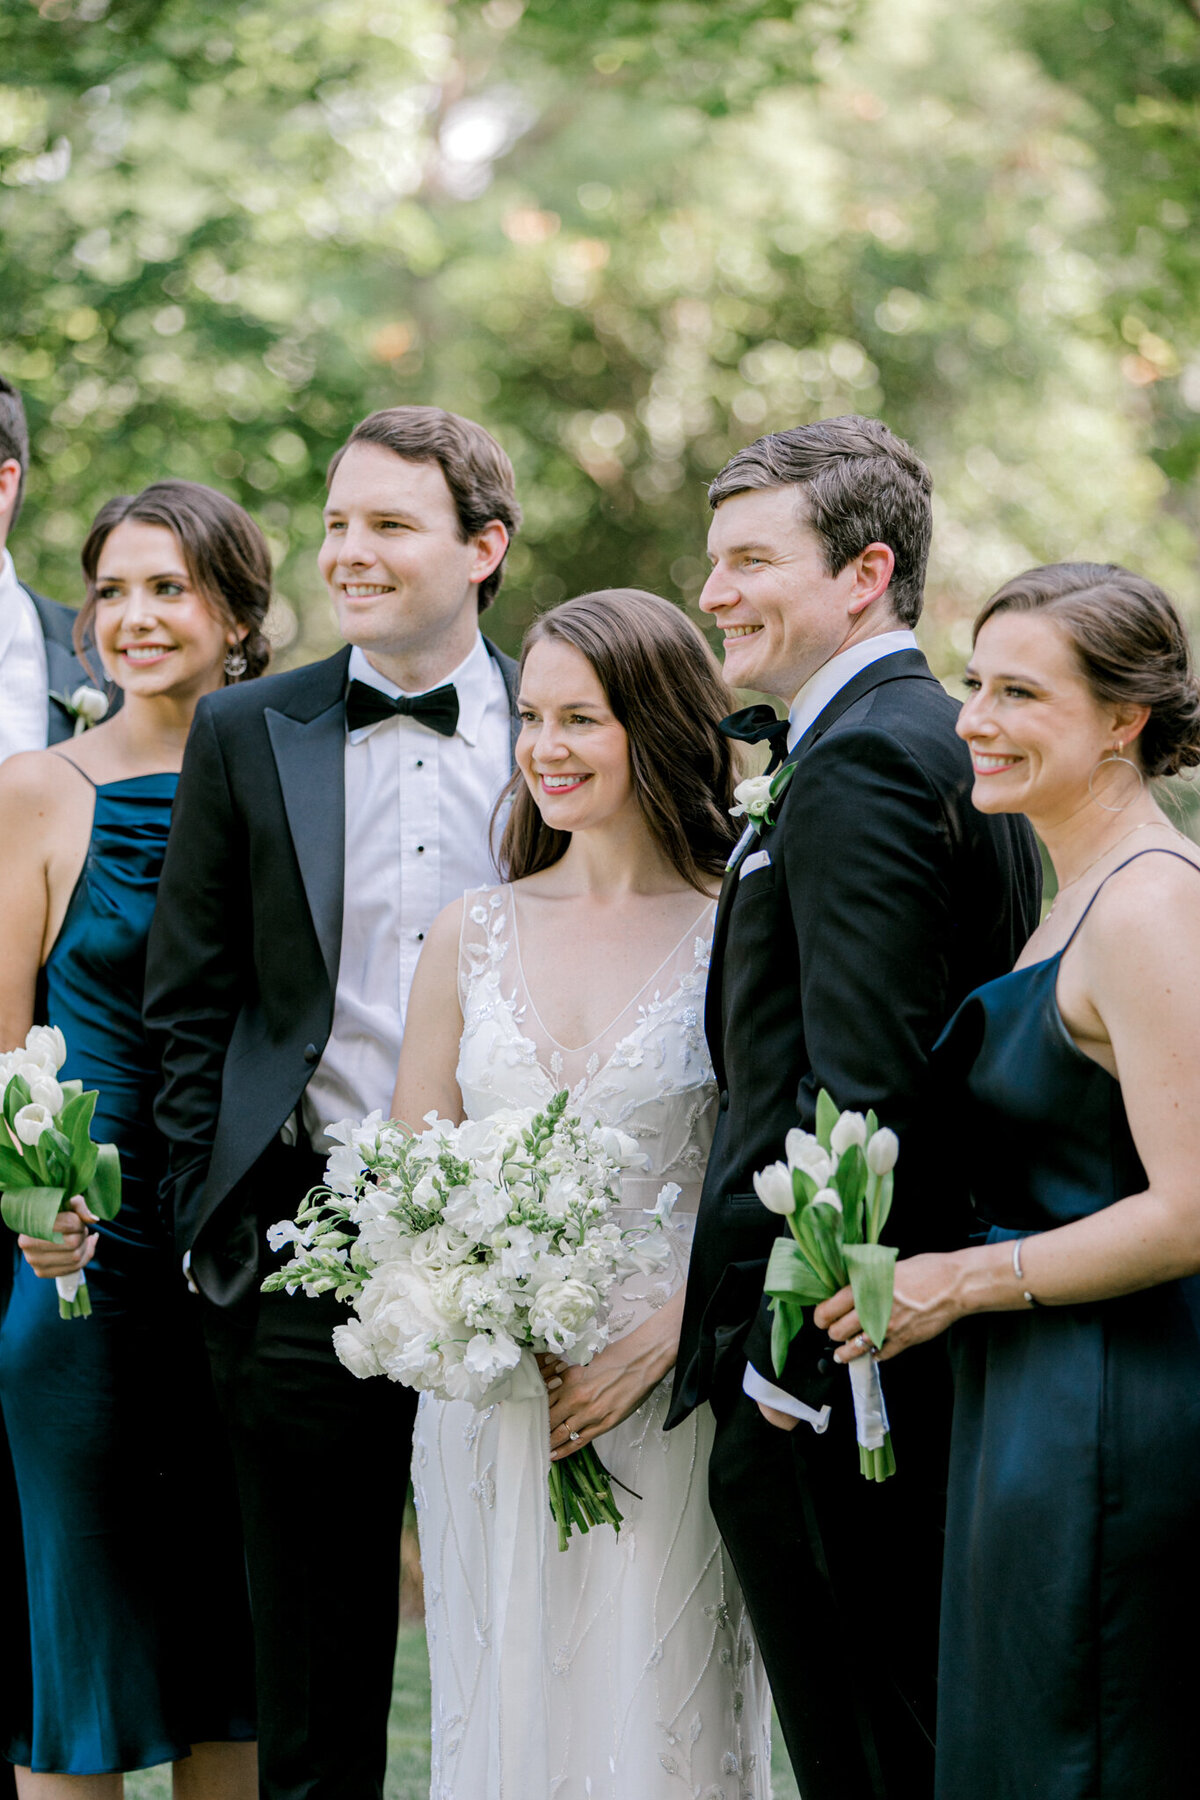 Gena & Matt's Wedding at the Dallas Arboretum | Dallas Wedding Photographer | Sami Kathryn Photography-109